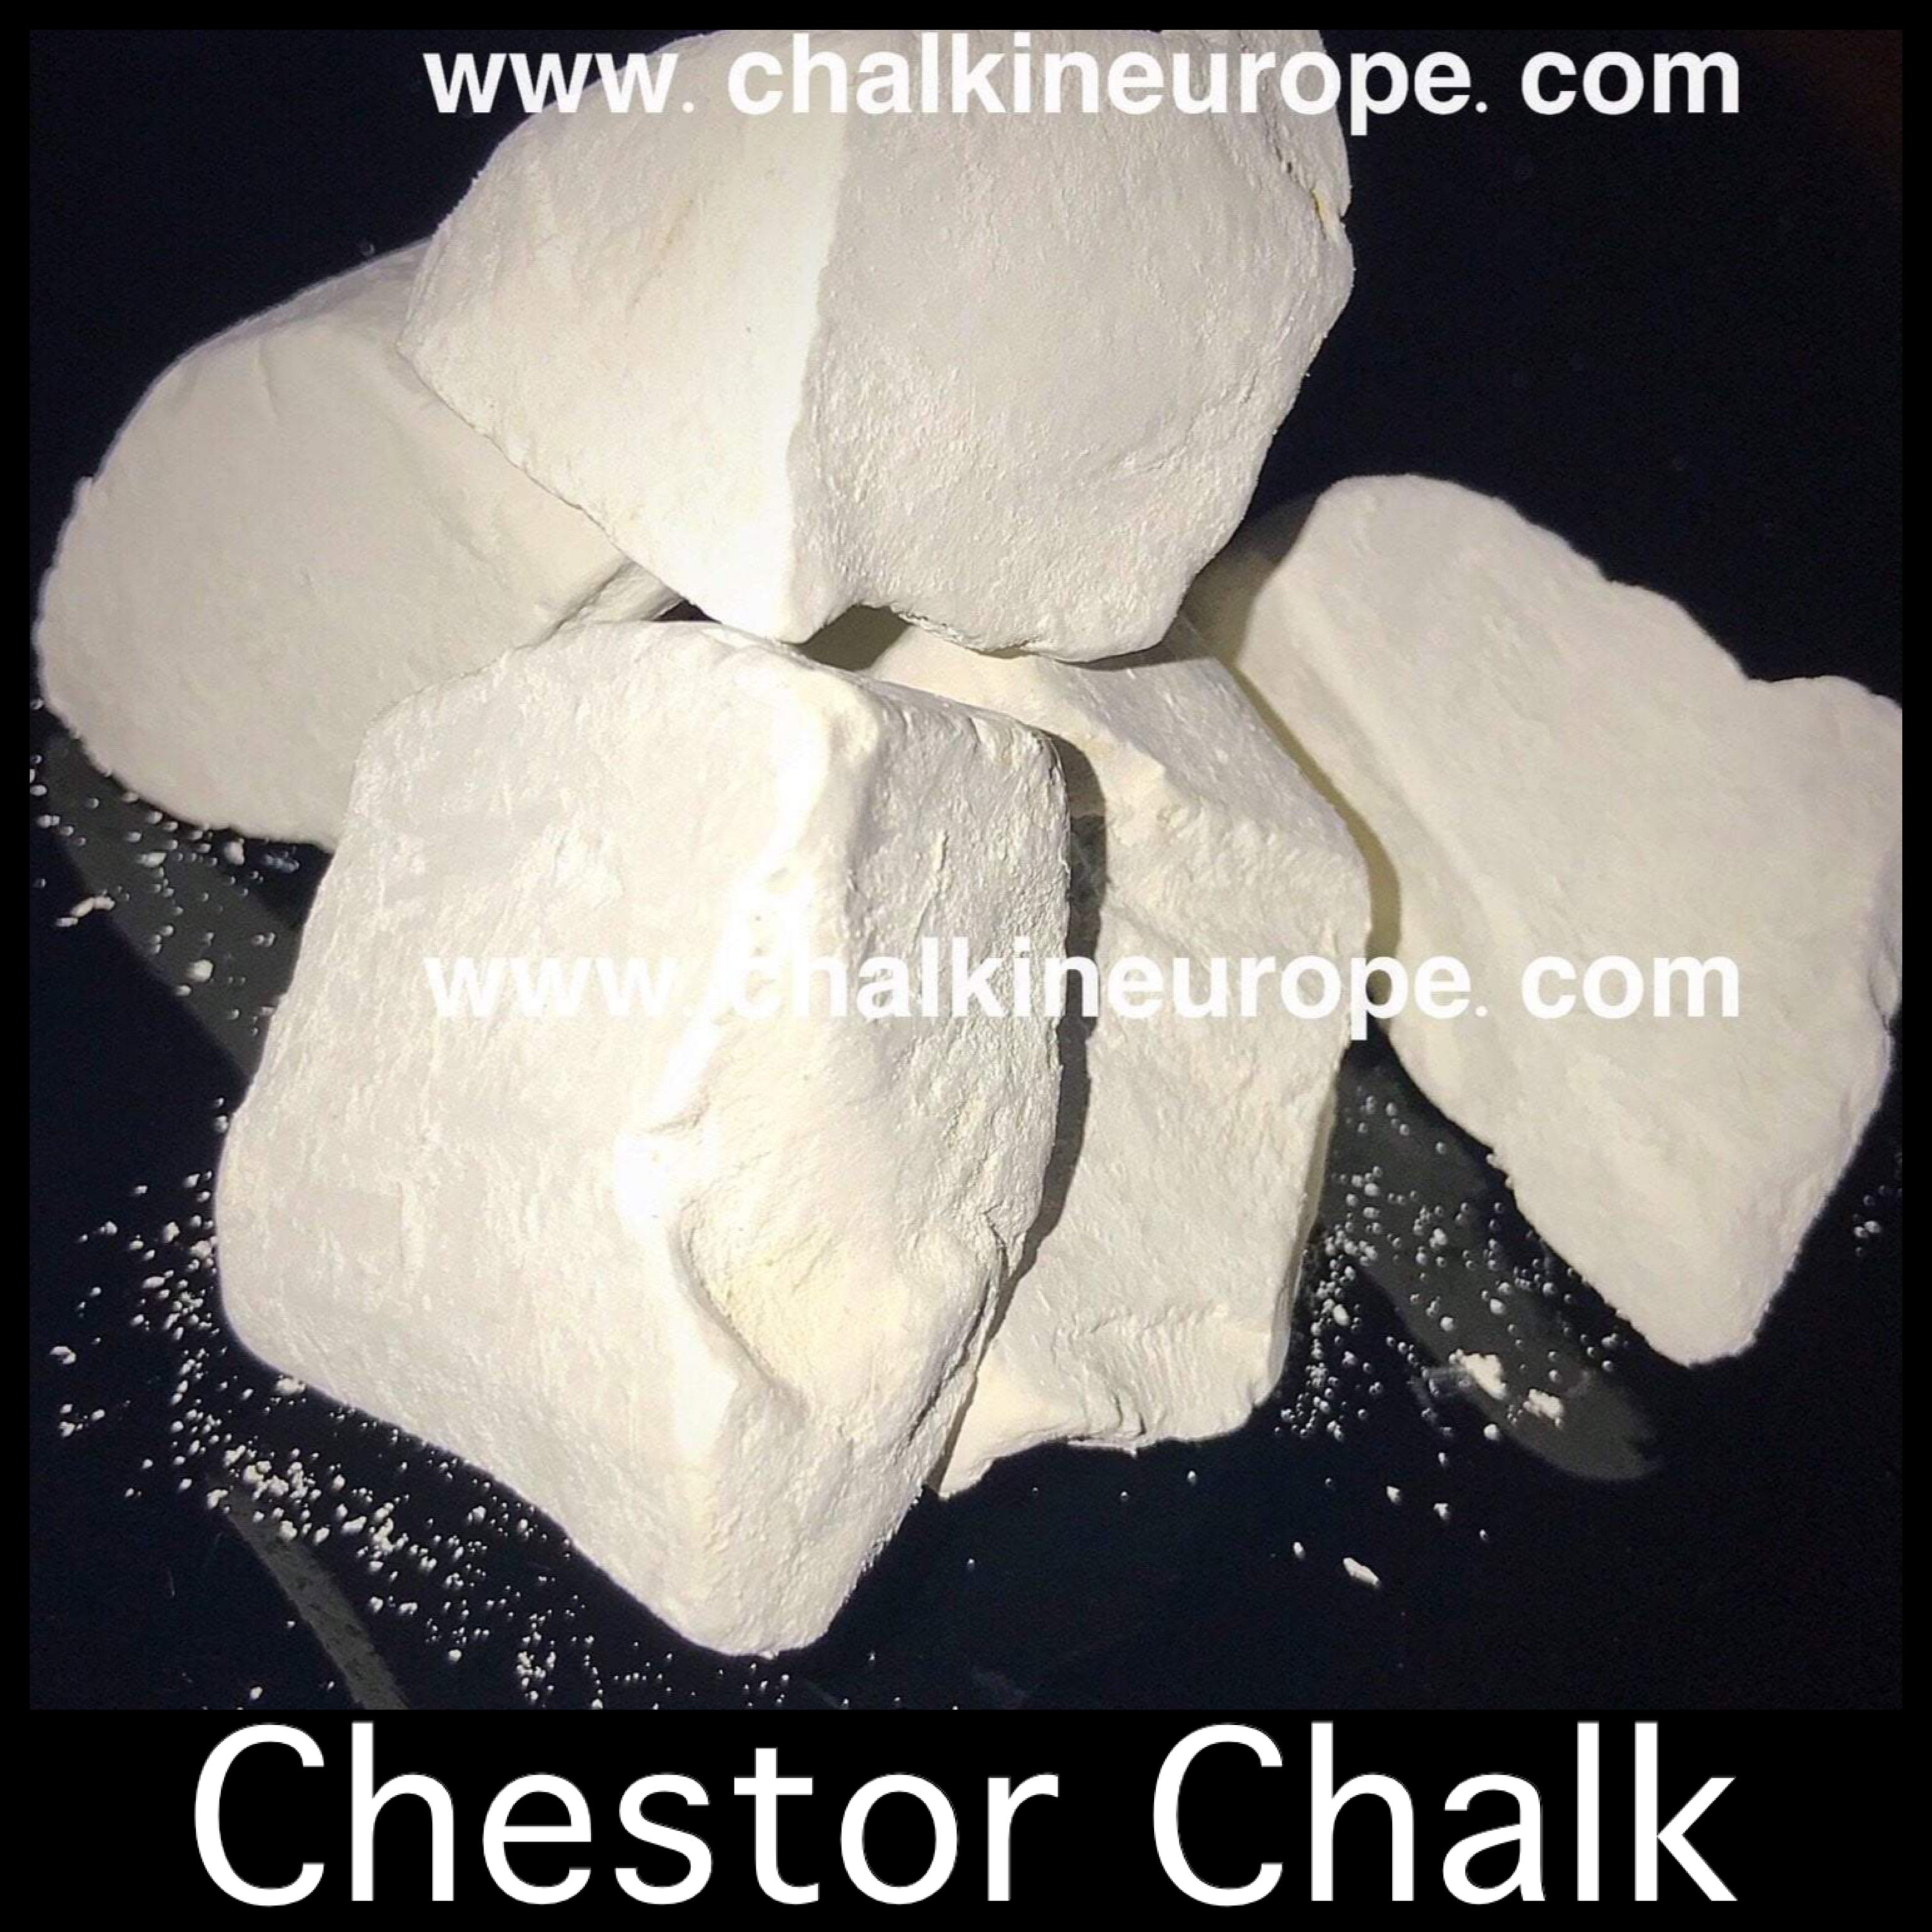 Chestor Chalk - Chalkineurope